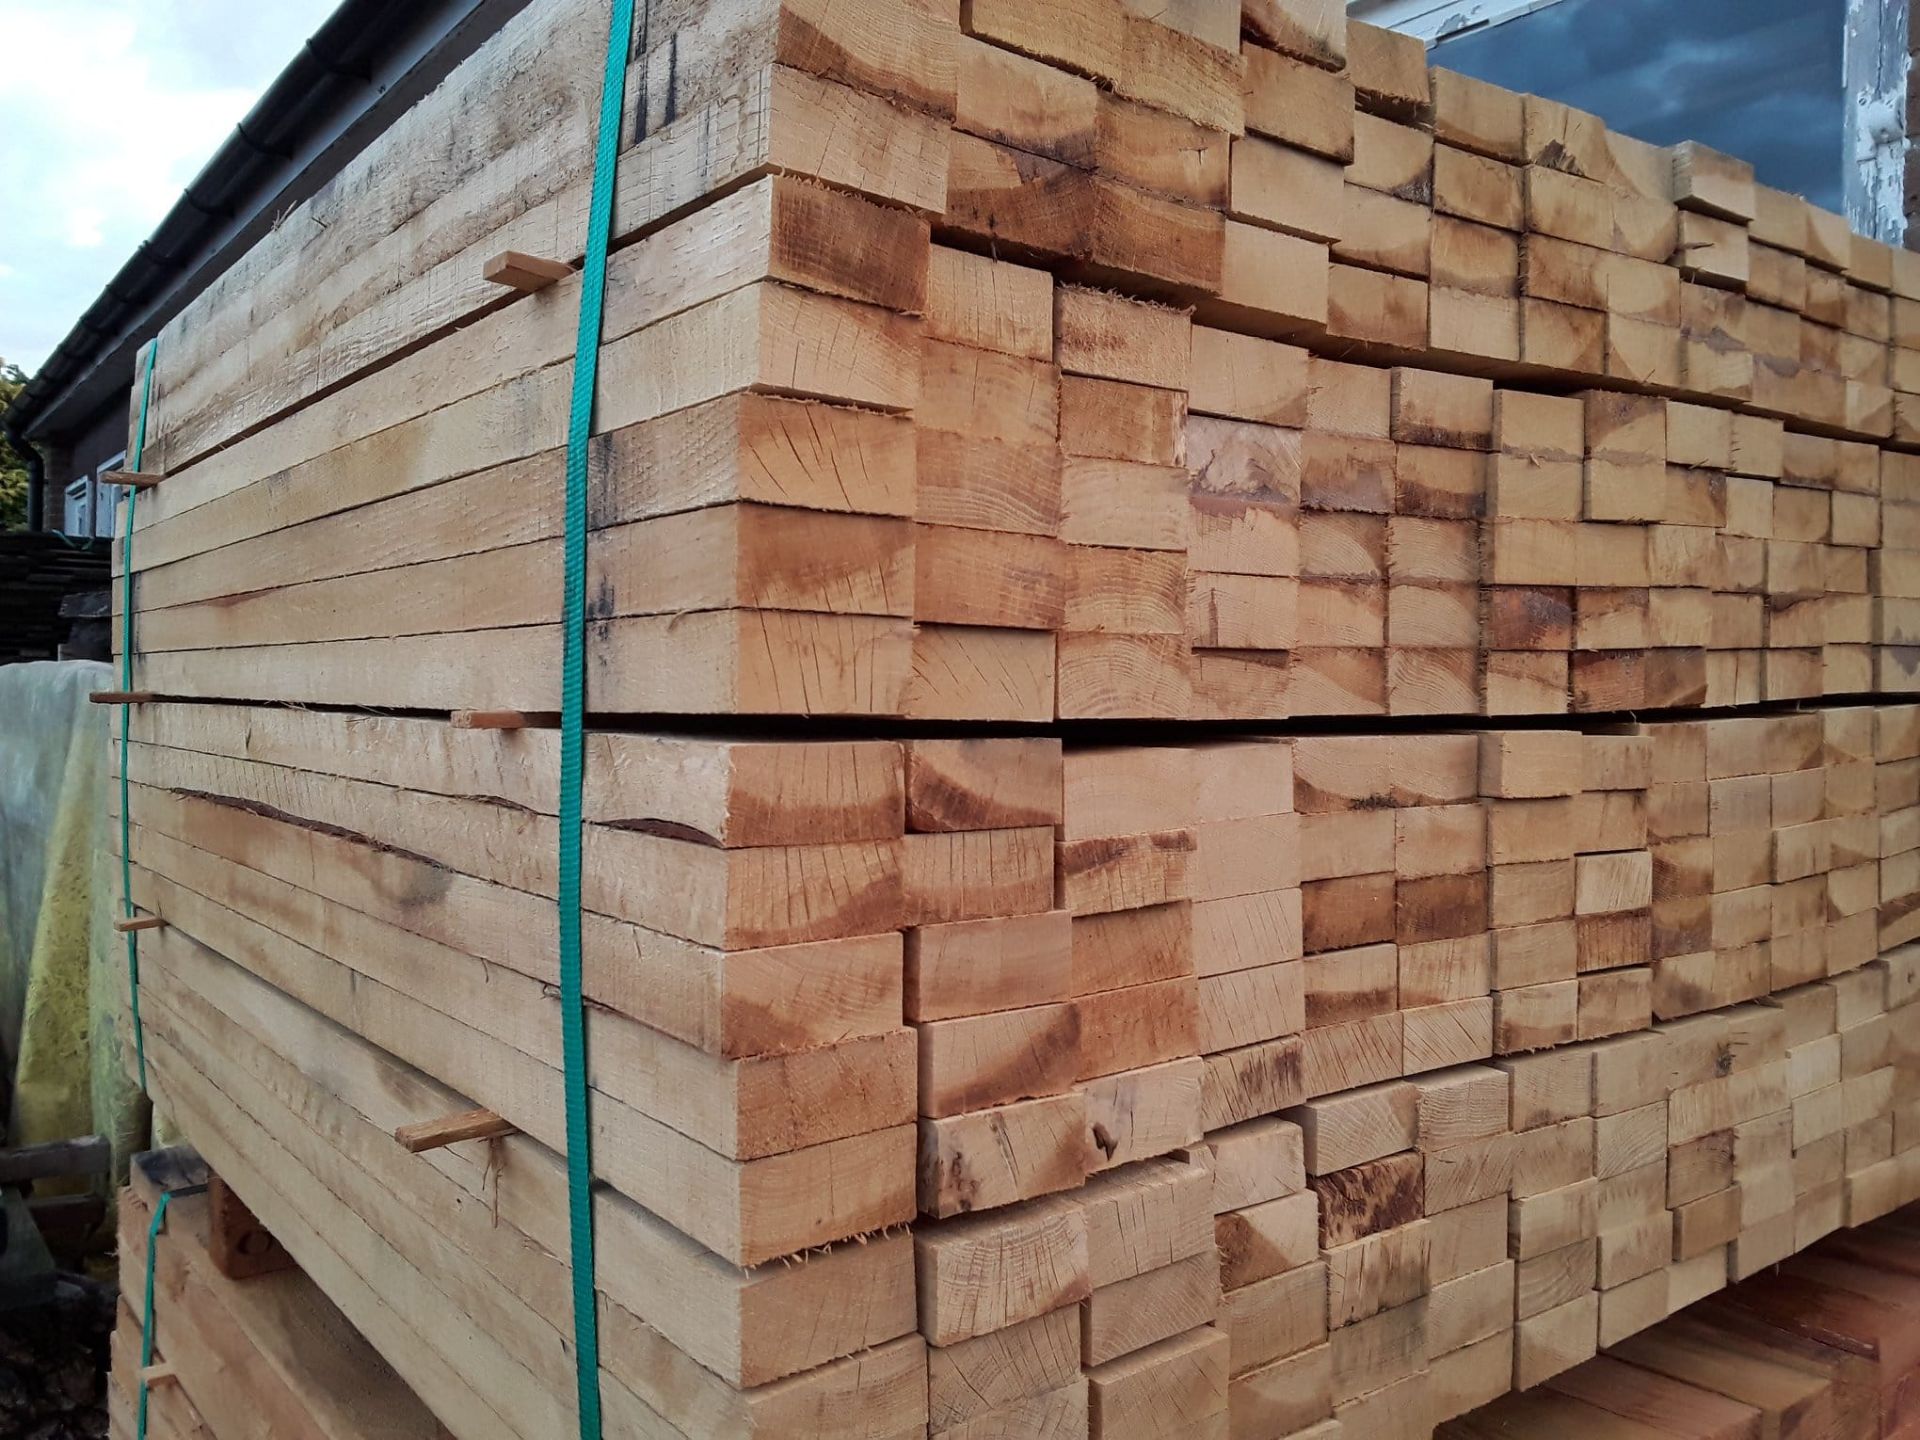 100x hardwood sawn unseasoned english oak palings / timber offcuts - Image 3 of 3